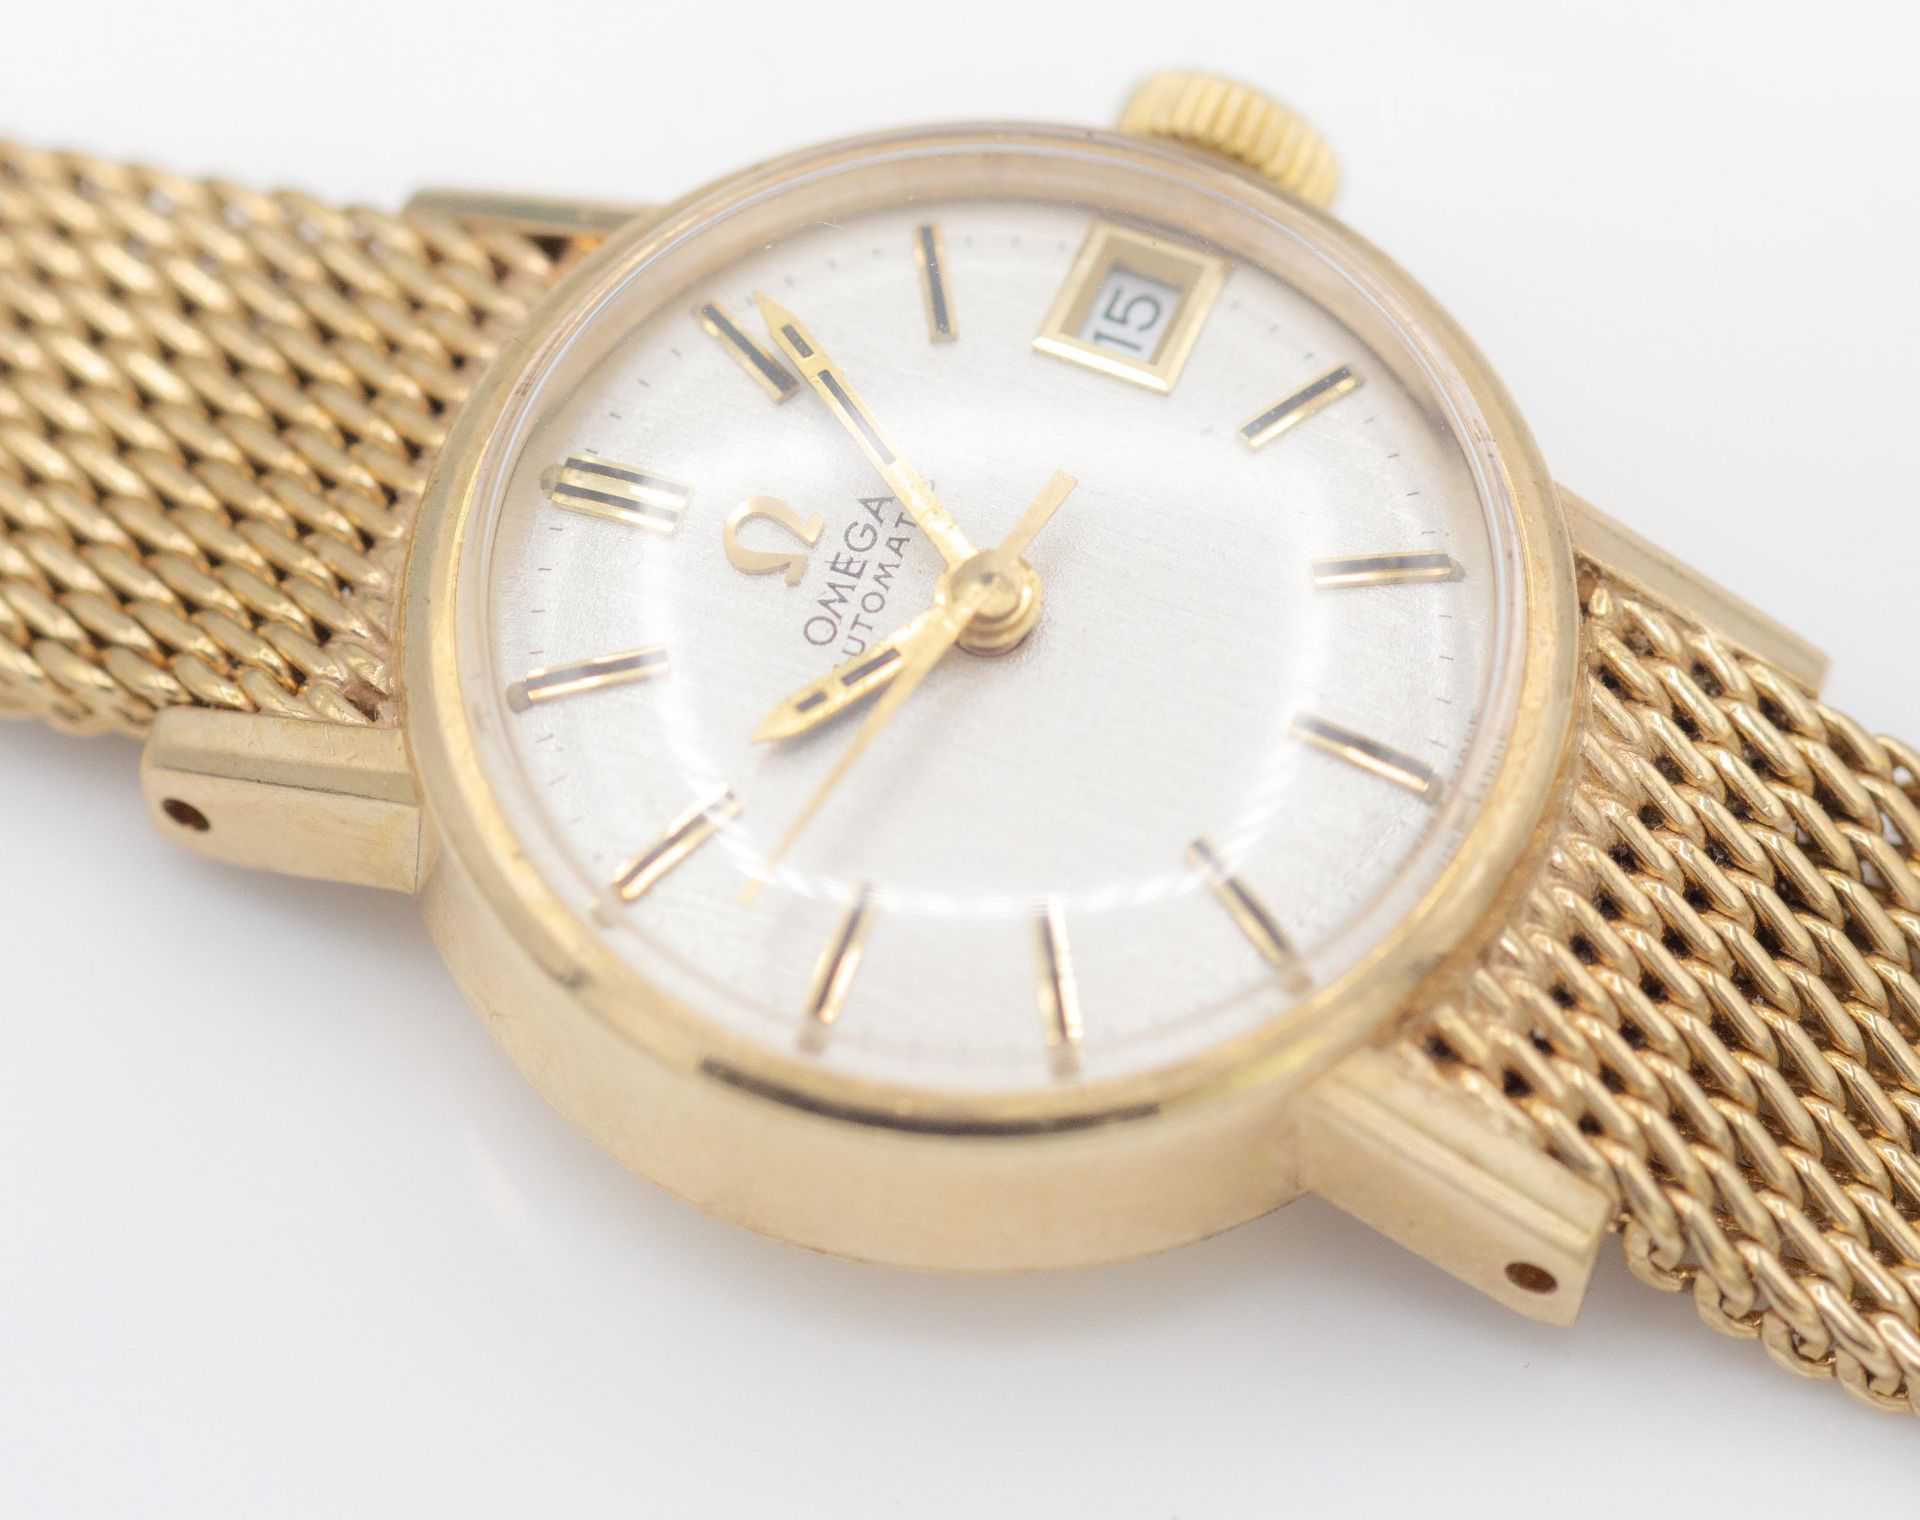 9ct Gold Hallmarked Omega Ladies Wrist Watch